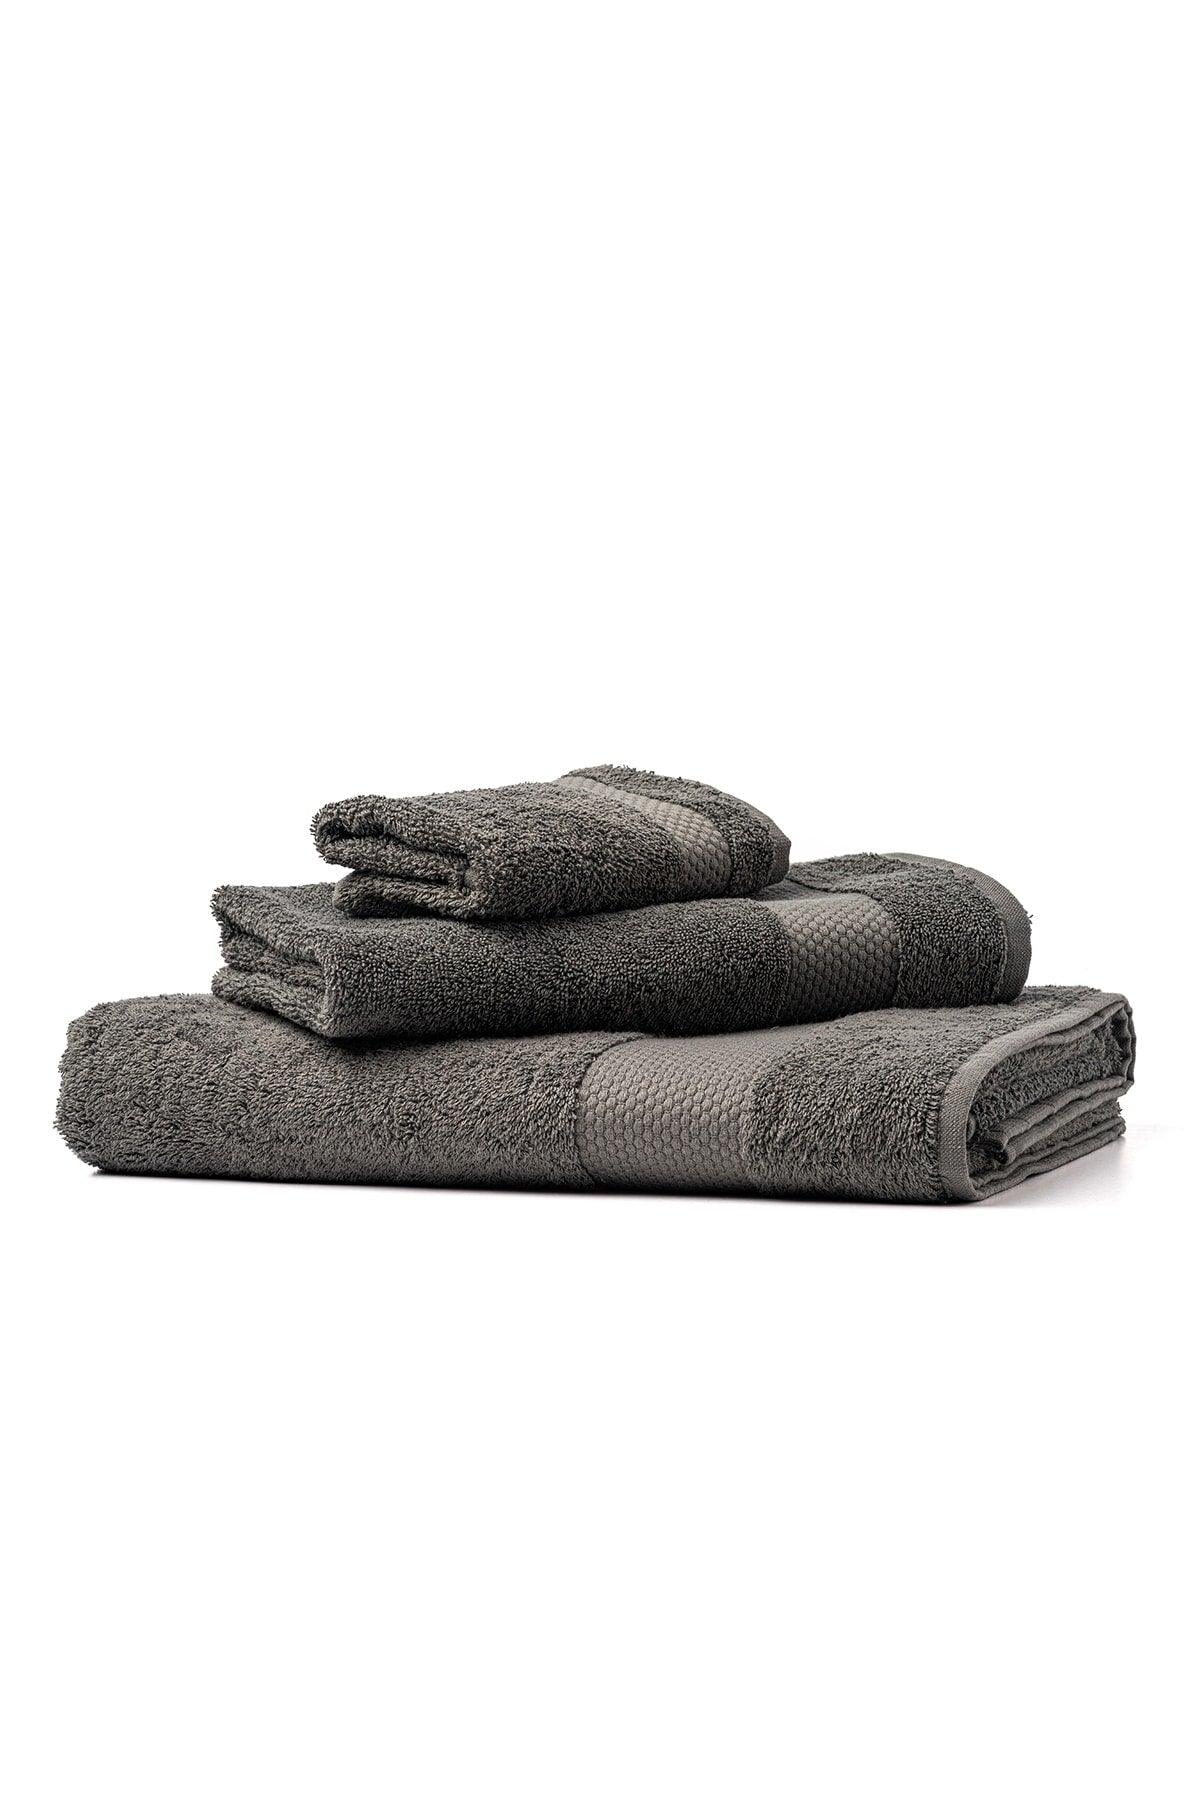 | Minerva | 100% Cotton Set of 2 Extra Soft Hand / Head Towels - Swordslife